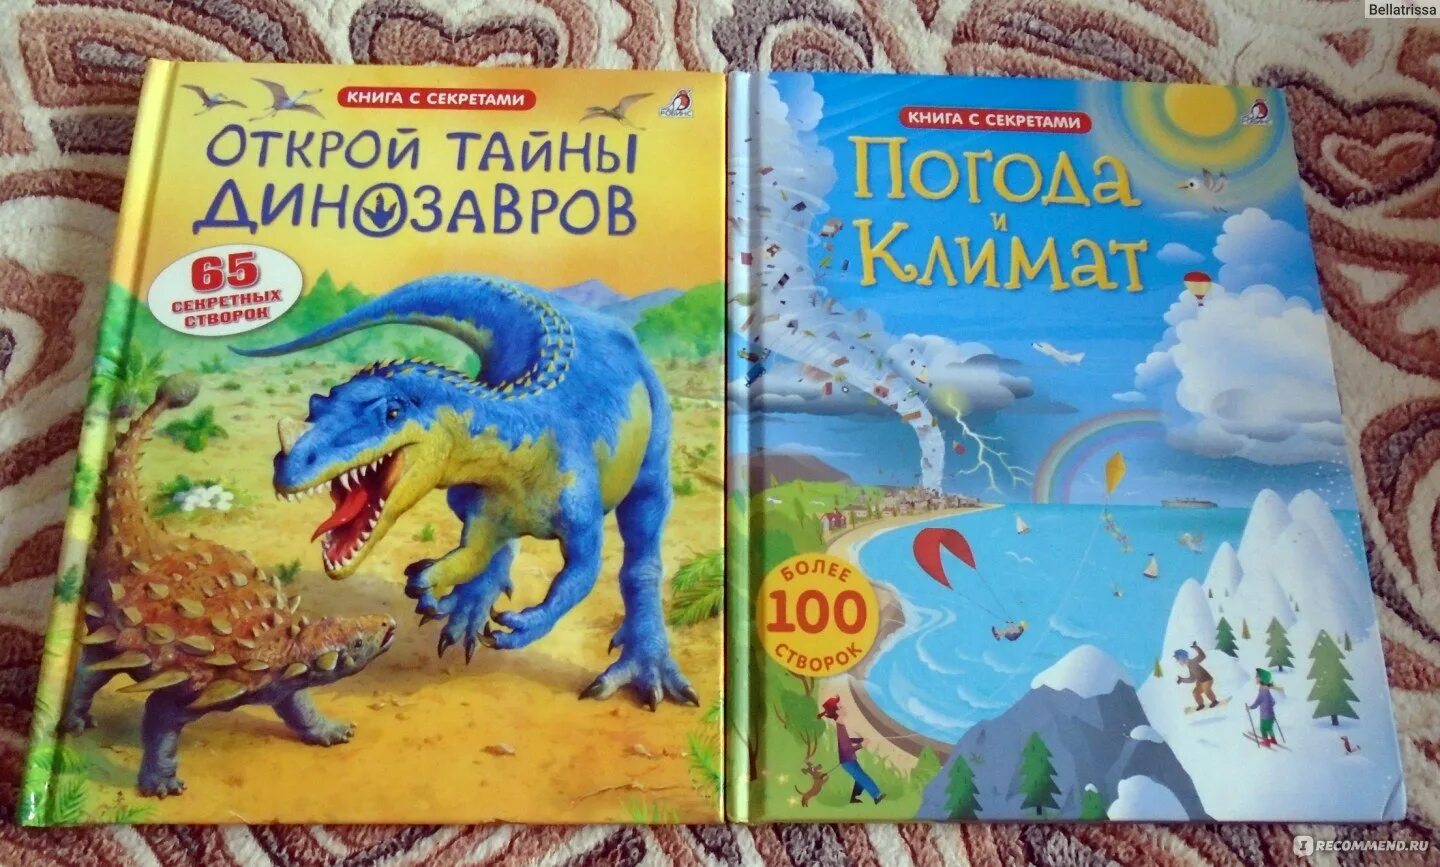 Открой тайны динозавров Роббинс. Робинс. Книга с секретами "Открой тайны динозавров" /16. Крига Открой тайны динозавров. Книга с секретами тайны динозавров.